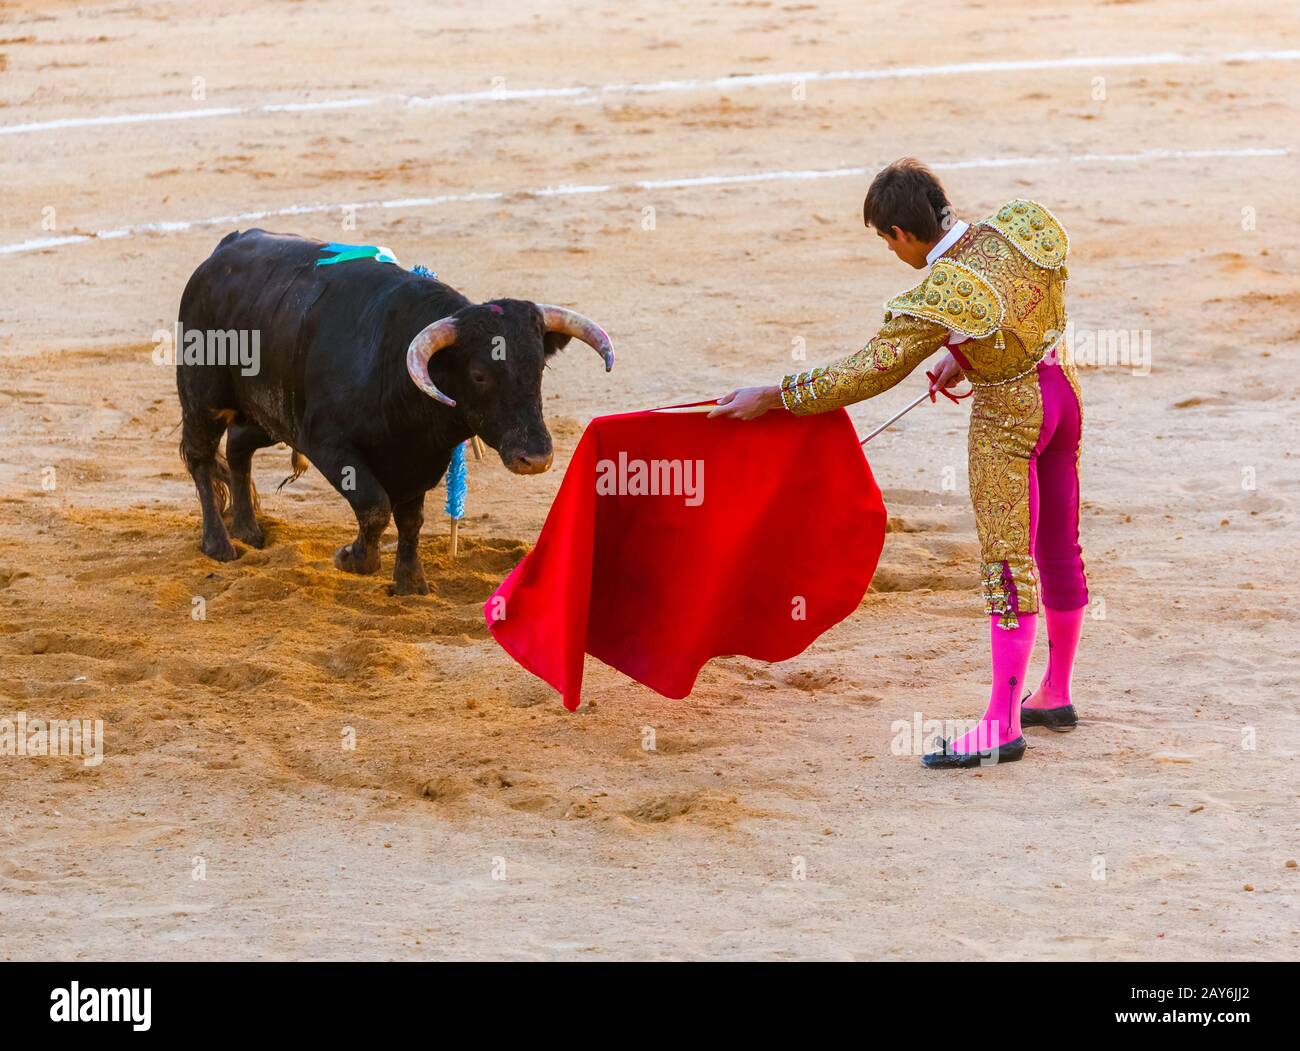 Matador et bull dans la taurbale tourada à Moita Lisbonne, Portugal. Banque D'Images